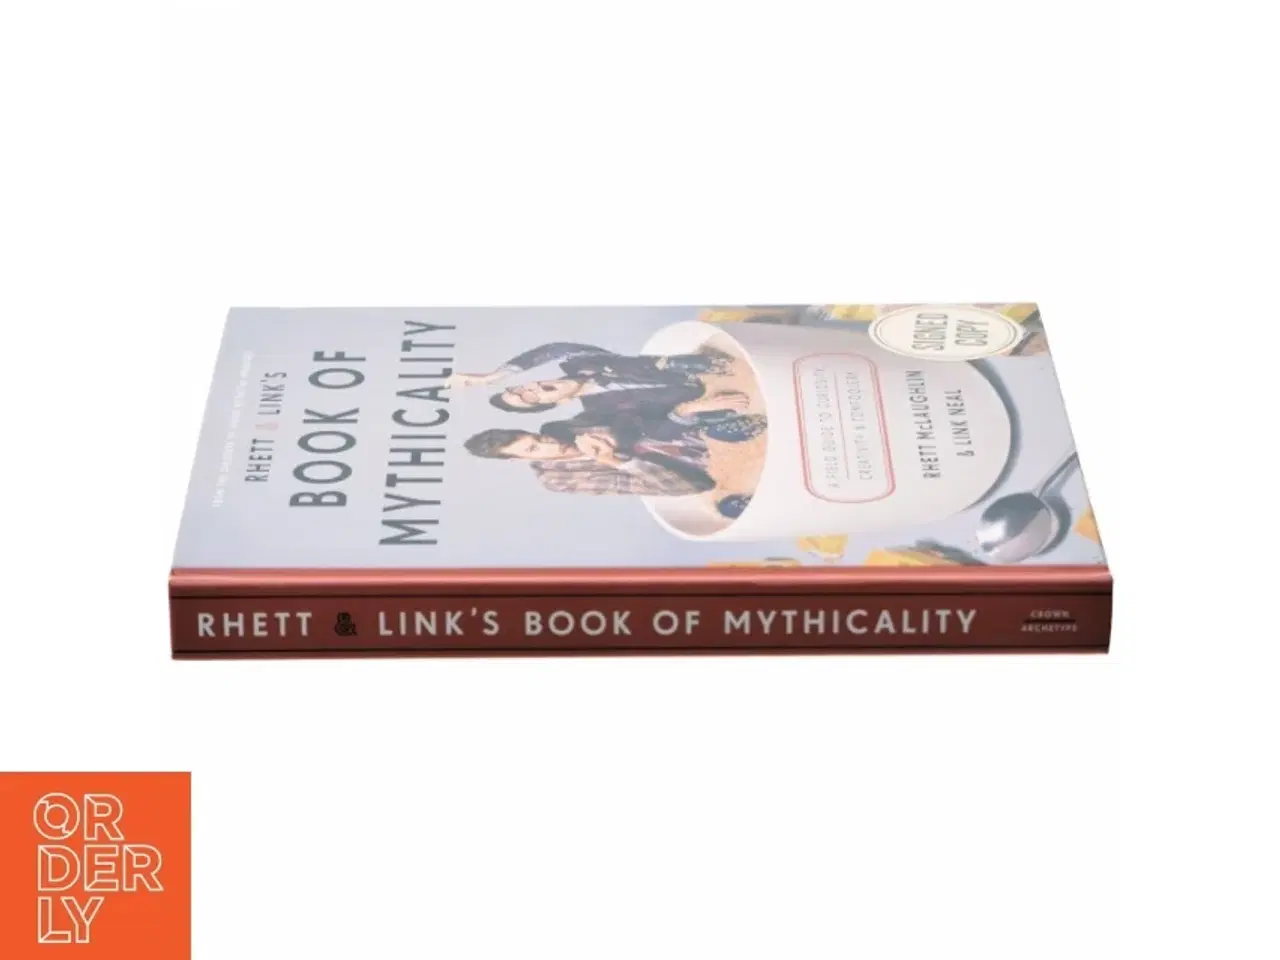 Billede 2 - Rhett & Link's book of mythicality